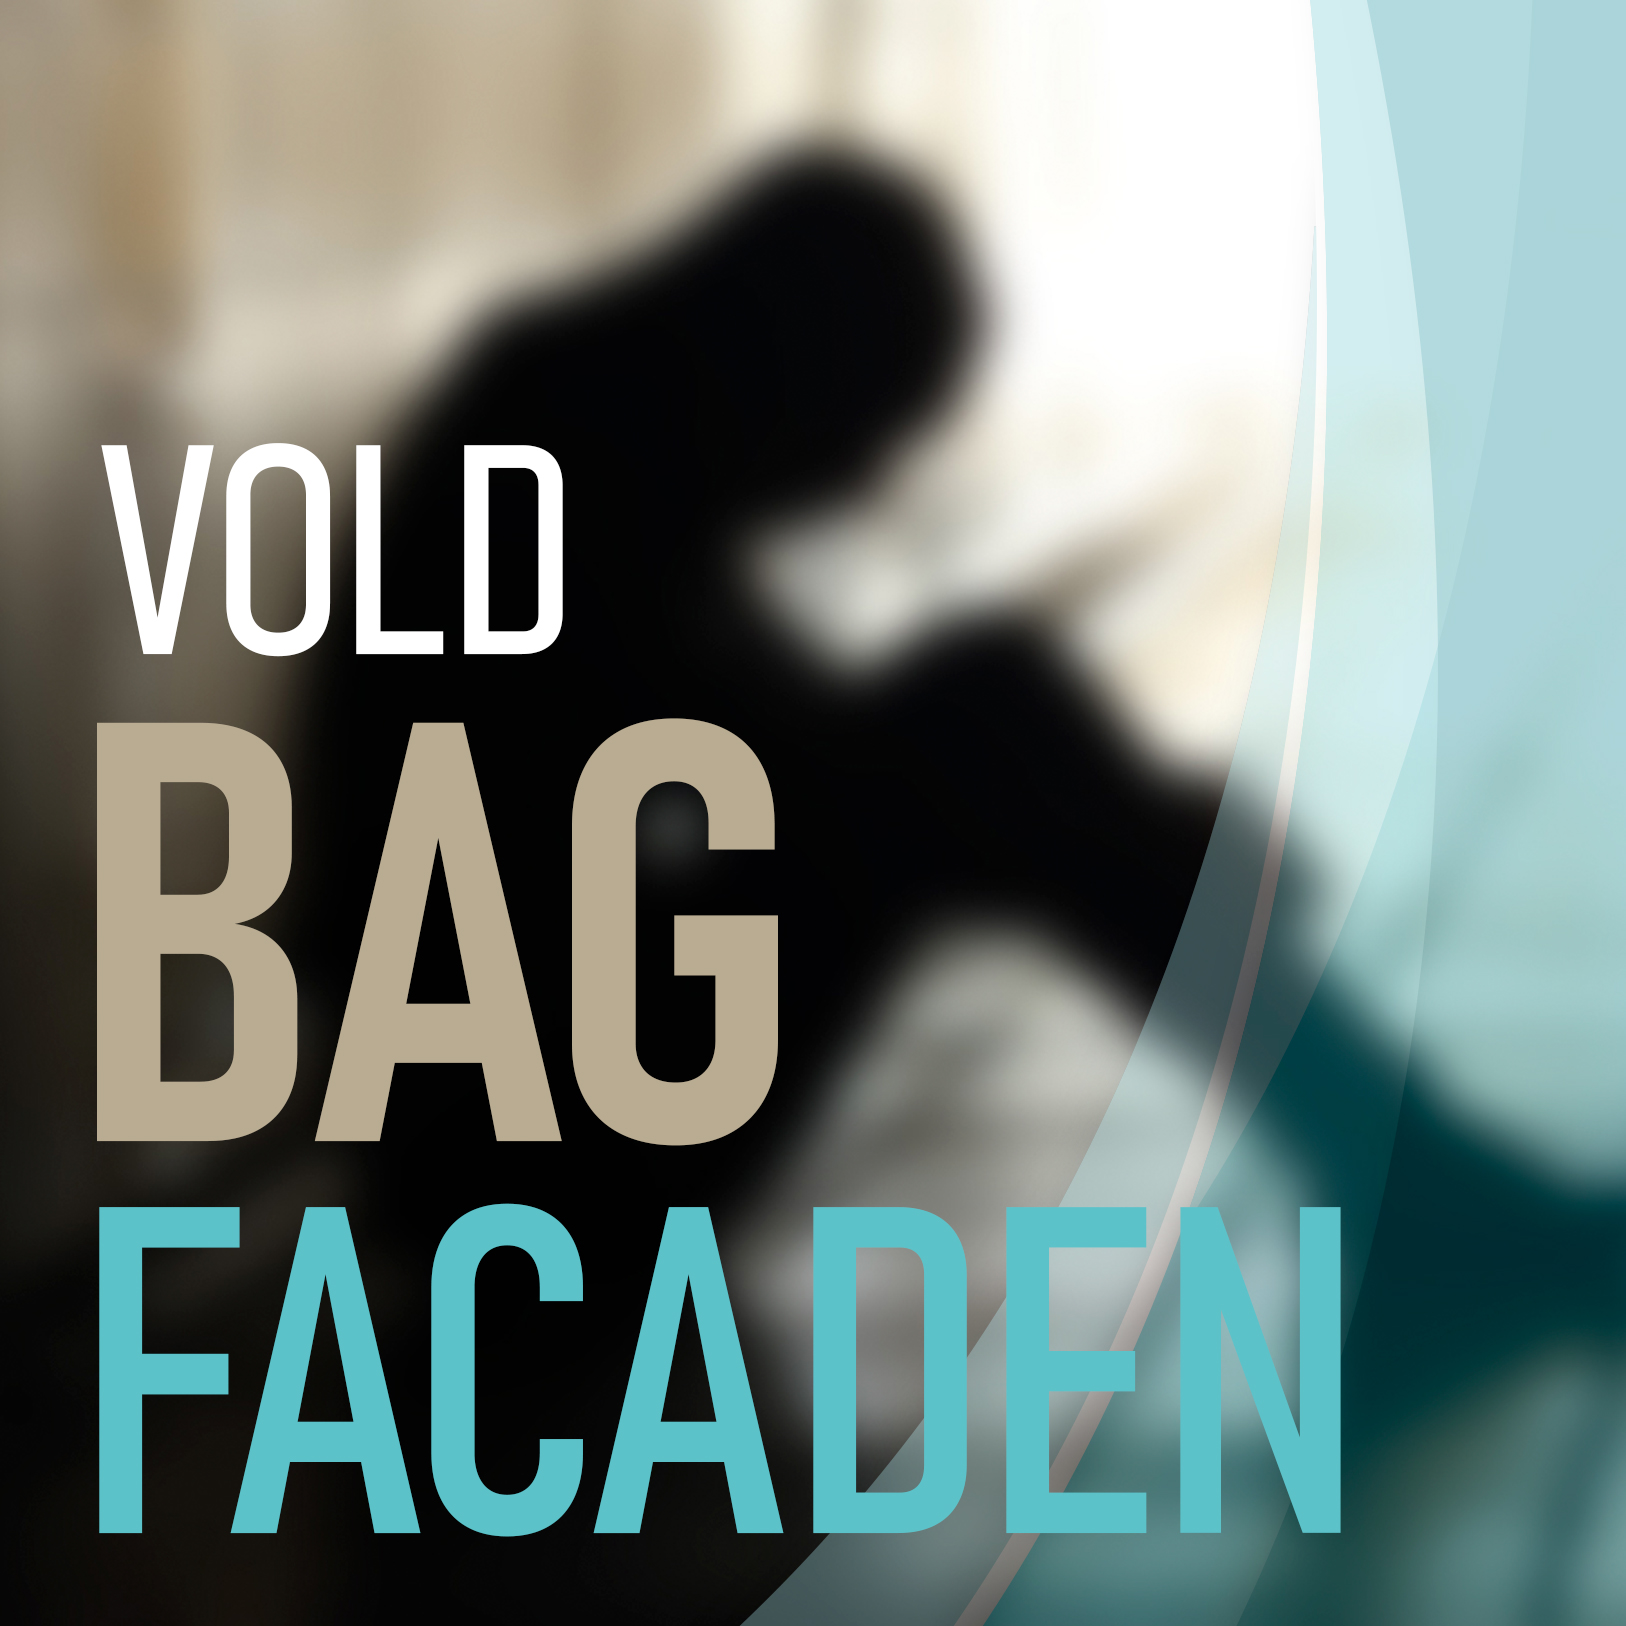 vold-bag-facaden-logo-9-10-08-2020